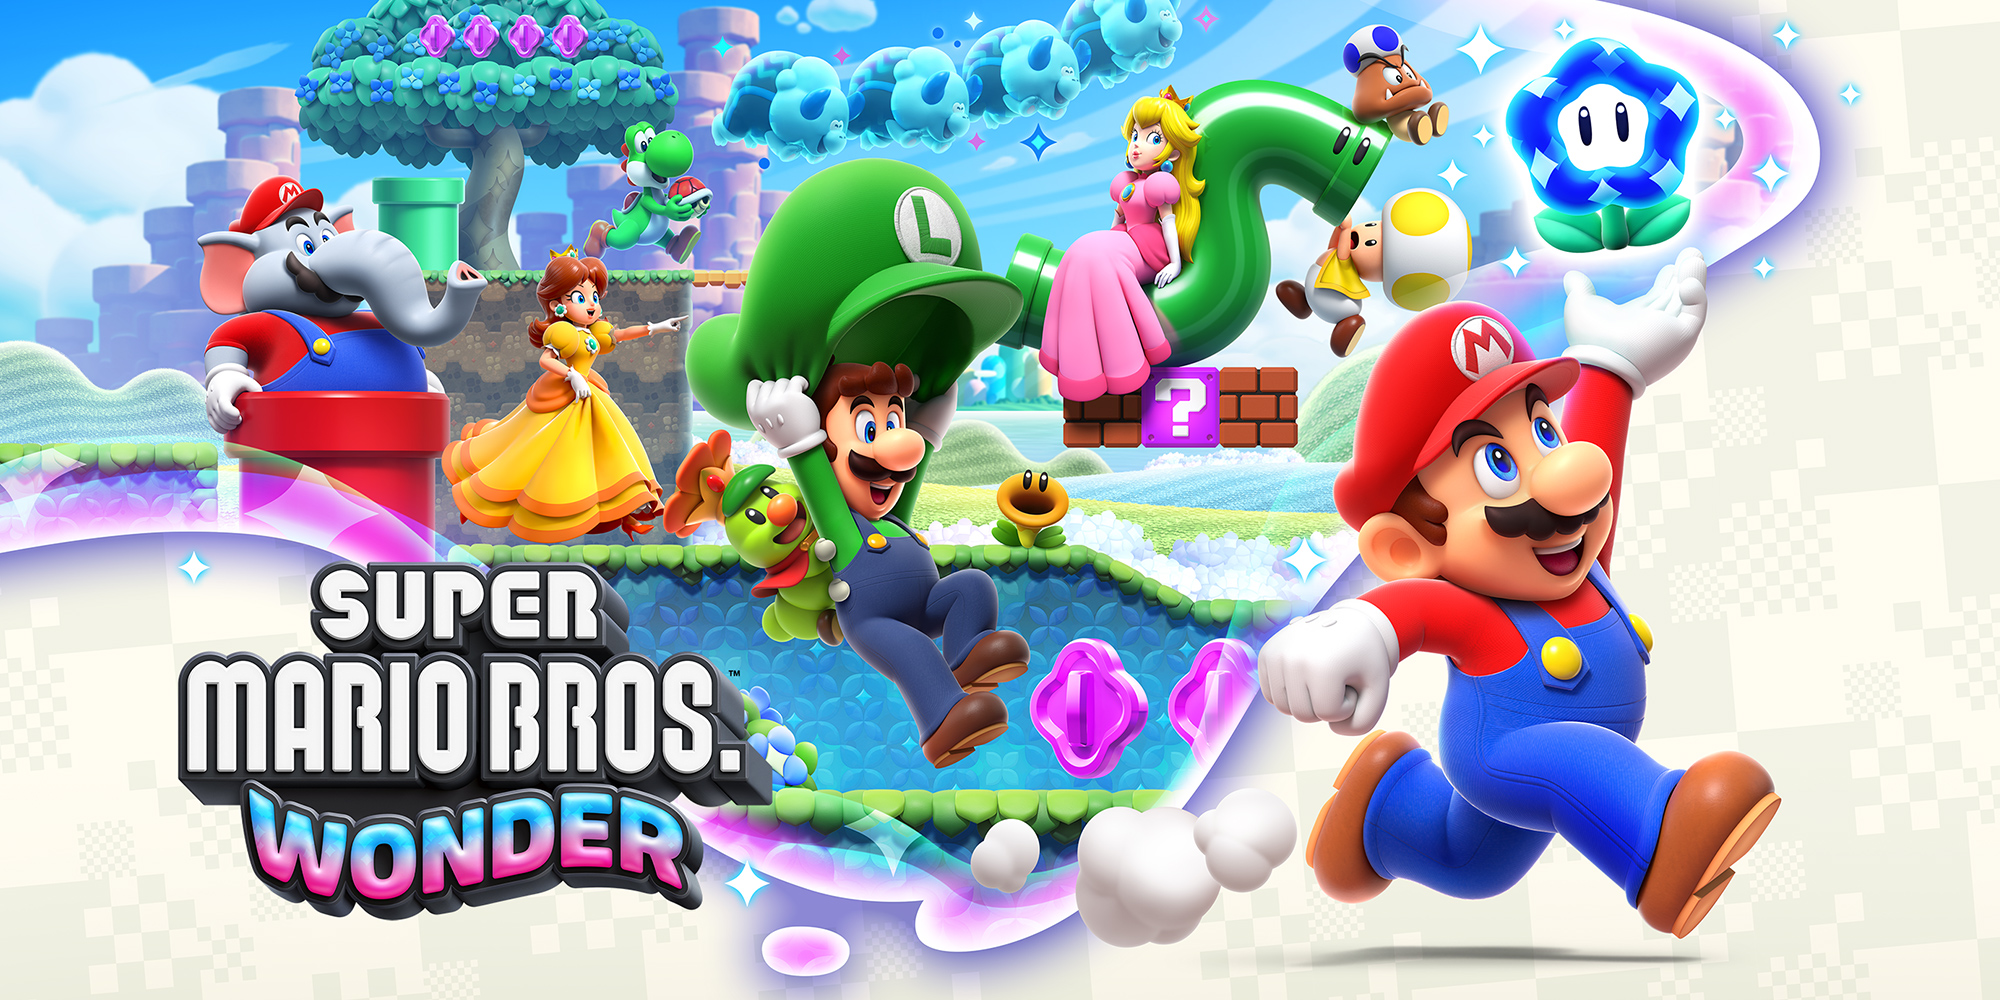 Super Mario Bros. Wonder wird etwa 4,5 GB Speicherplatz auf deiner Switch benötigen.